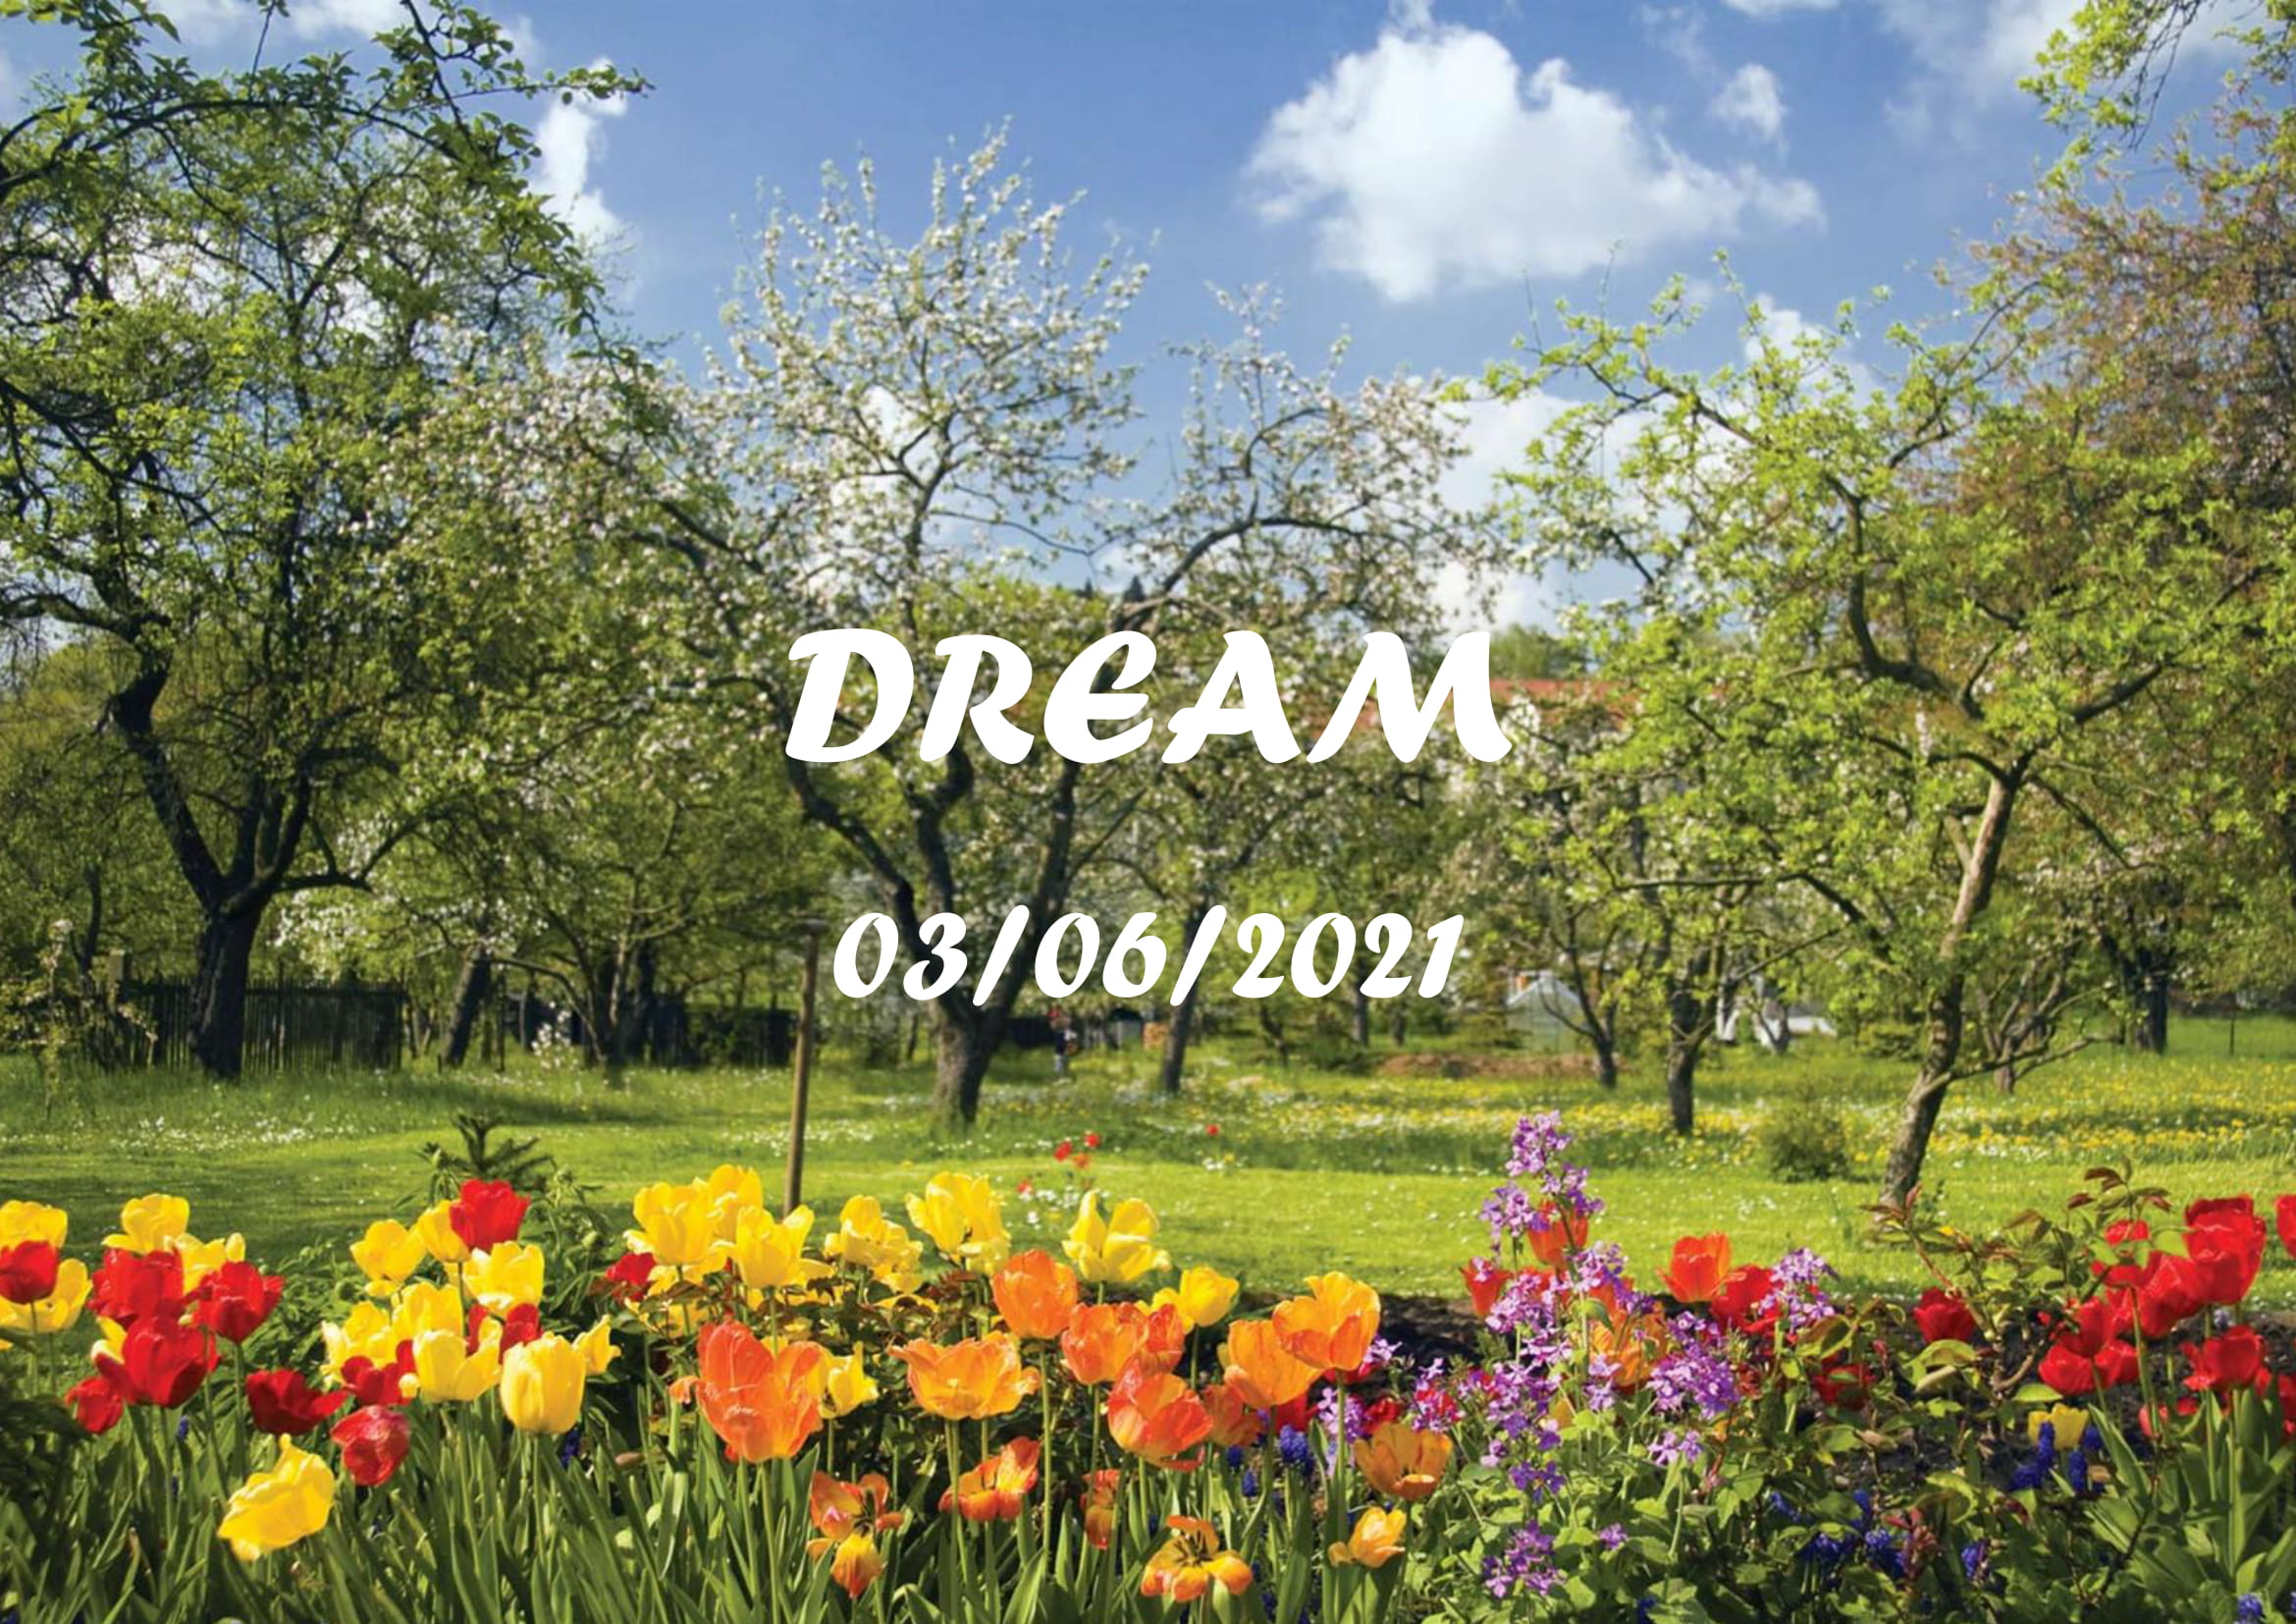 394-june-2021-newsletter-dream-heritage-cic-01.jpg